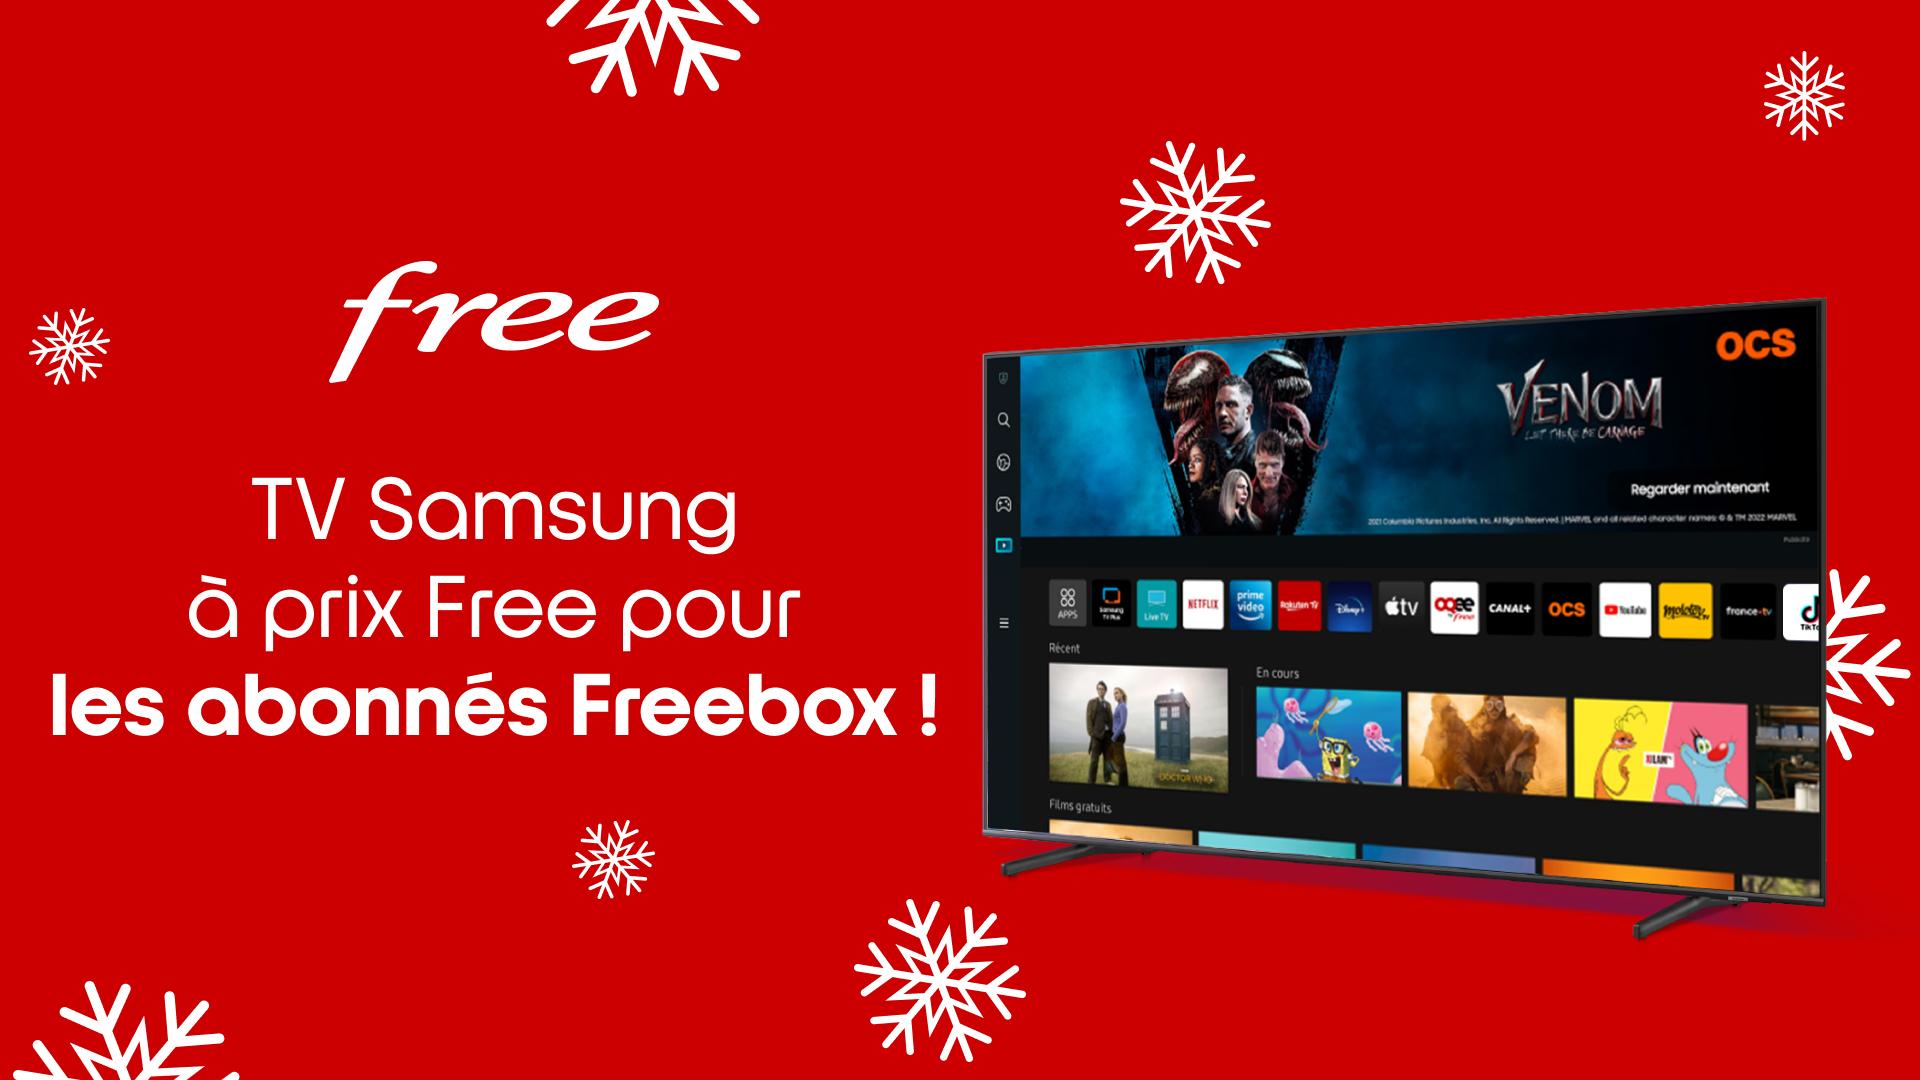 Abonnés Freebox, profitez d’une Smart TV Samsung à prix Free